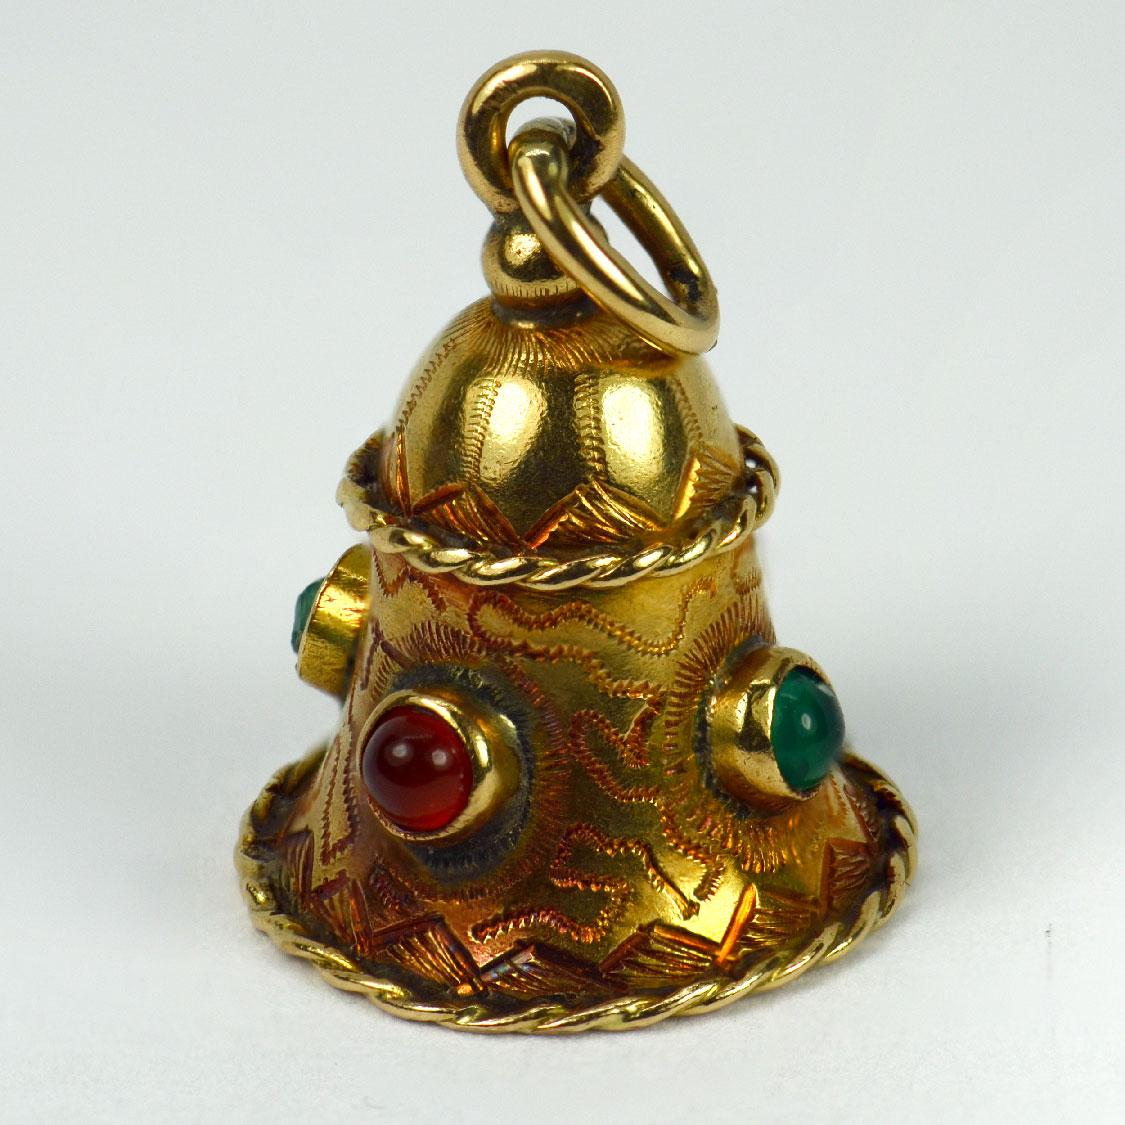 Un pendentif de charme en or jaune 18 carats (18K) conçu comme une cloche sertie de cabochons en pâte (un endommagé). Estampillé de la marque du hibou pour l'importation française et de l'or 18 carats.

Dimensions : 1.9 x 1,4 x 1,4 cm (sans